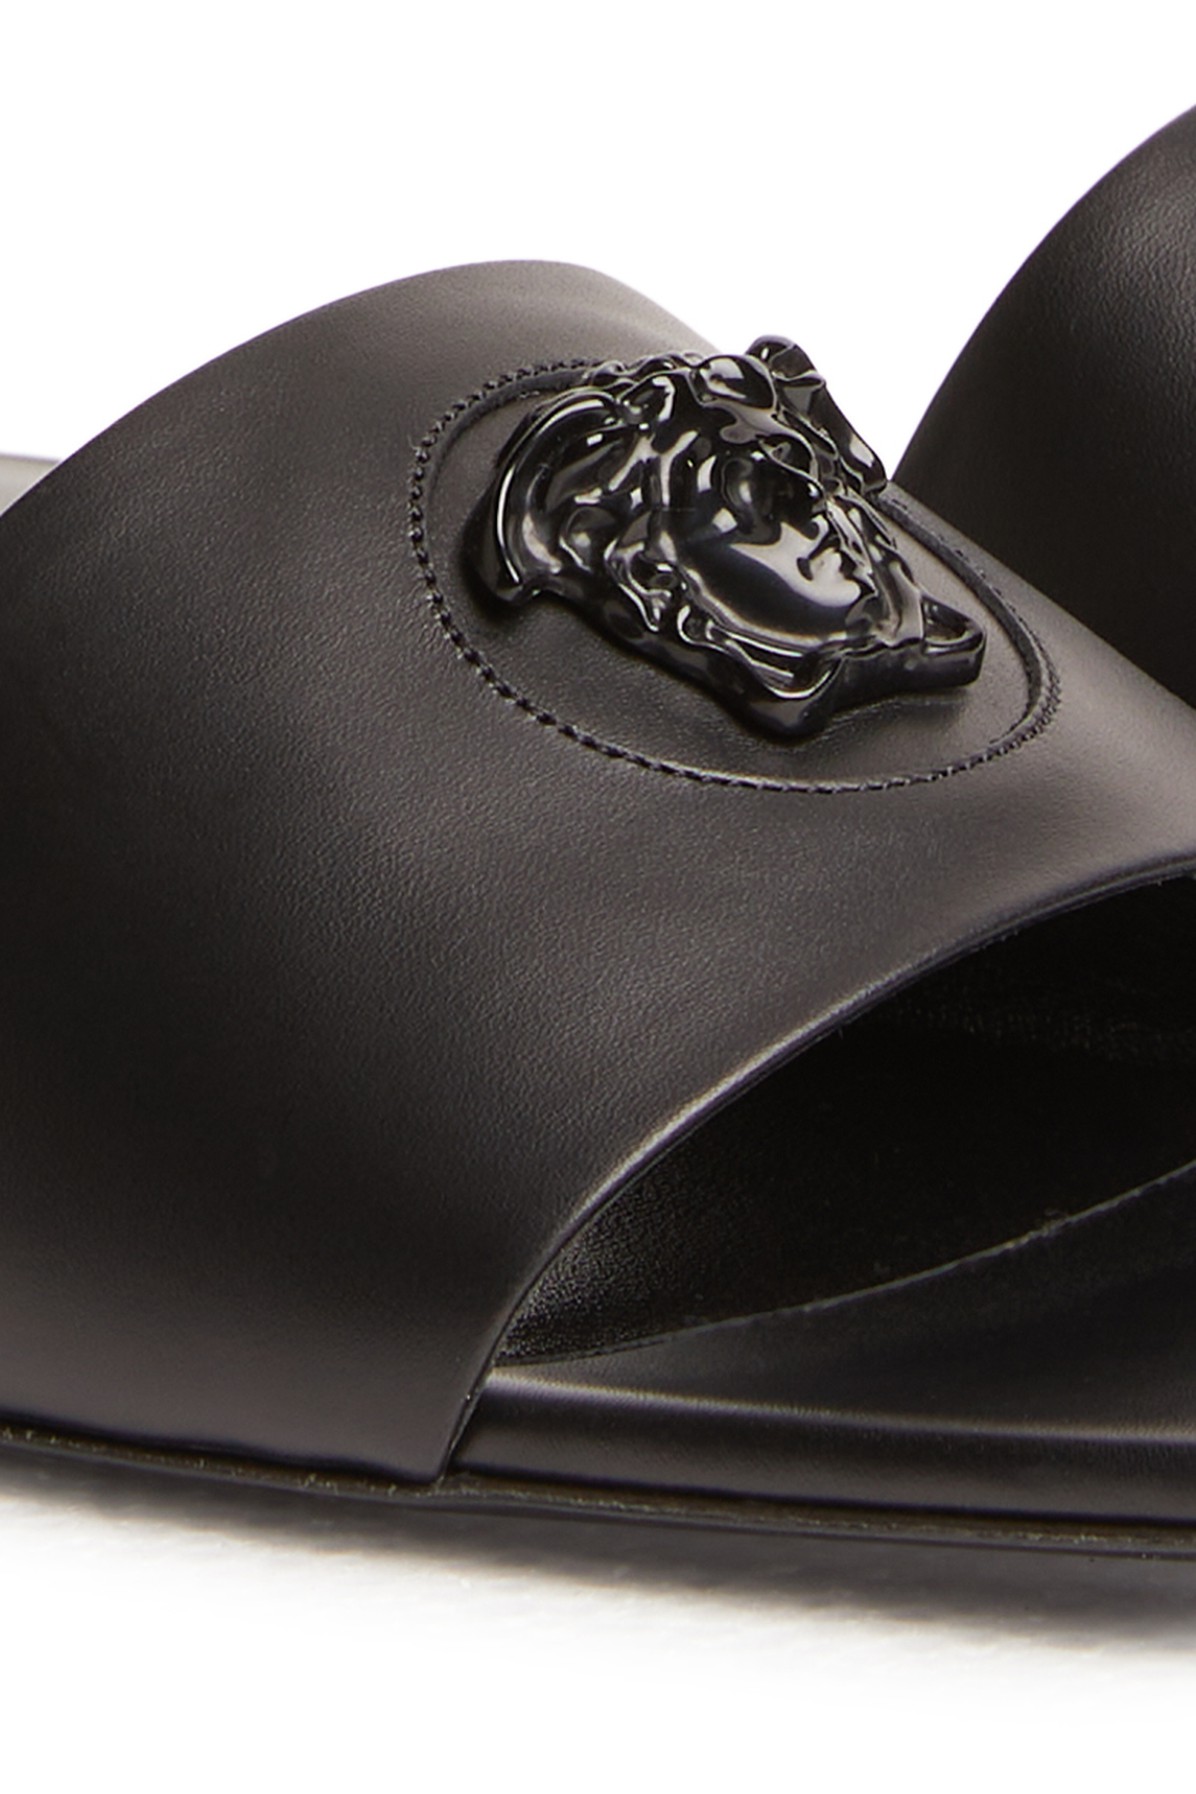 Versace La Medusa Leather Slides